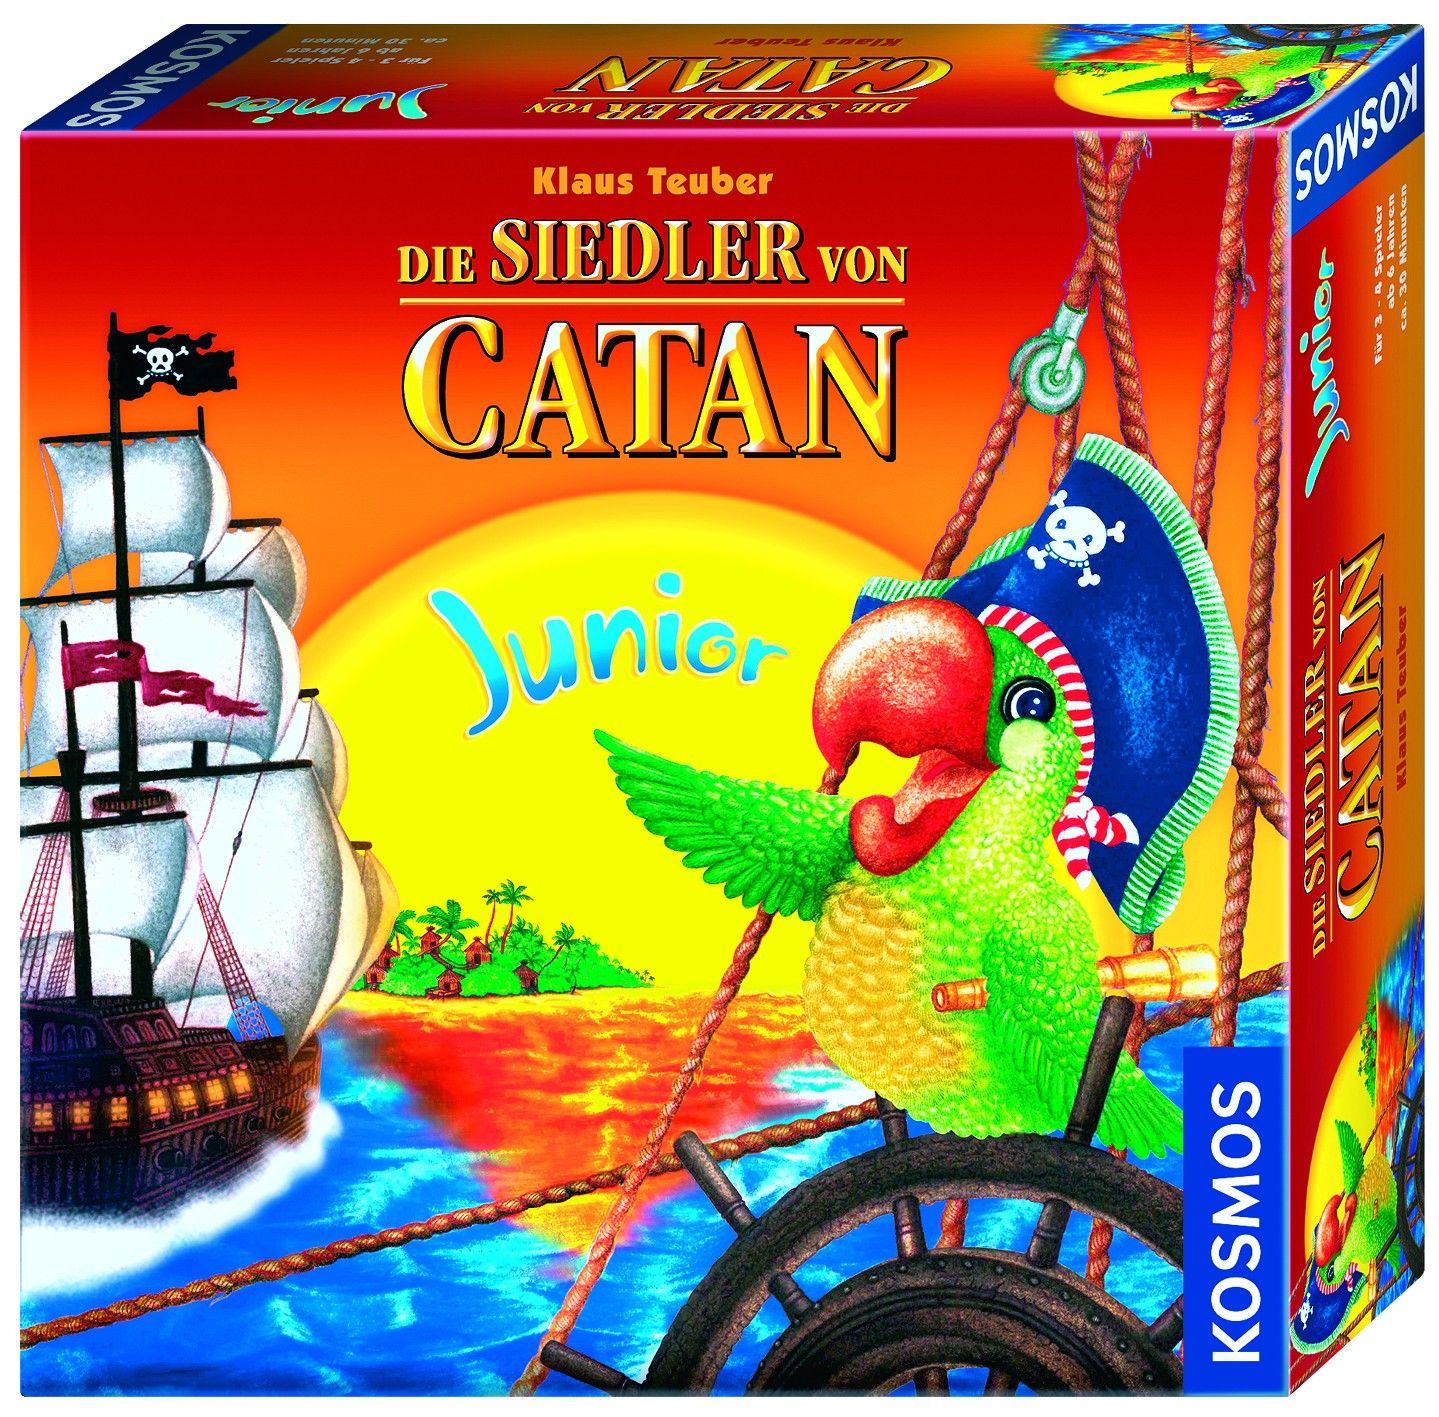 De Kolonisten van Catan Junior, bordspel prijs vergelijken doet op Bordspellenvergelijken.nl zowel voor in als in